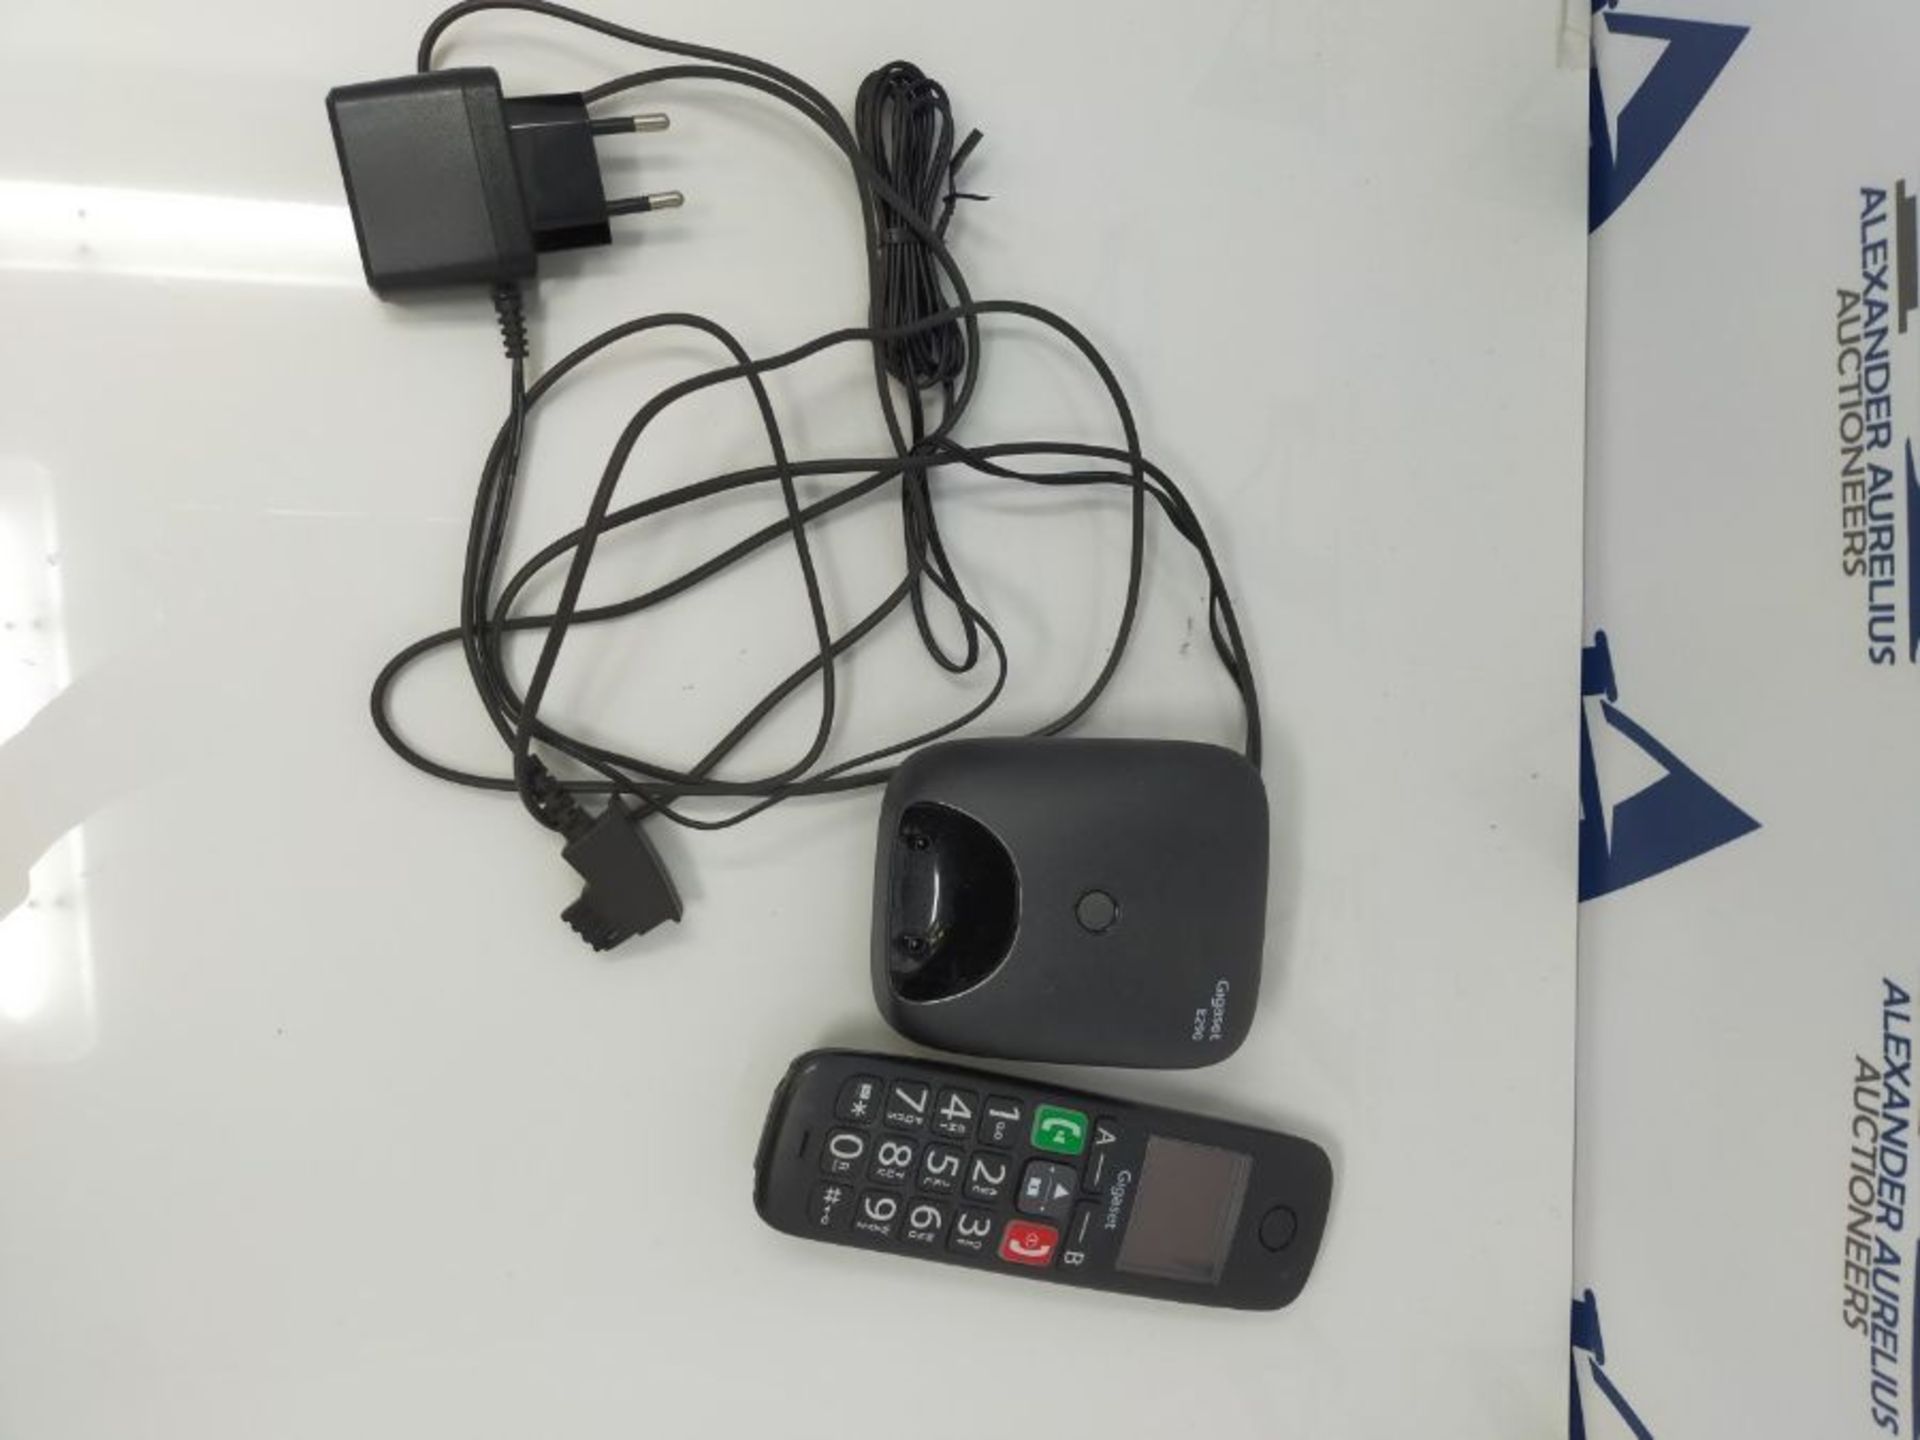 Gigaset E290 - Schnurloses Senioren-Telefon ohne Anrufbeantworter mit großen Tasten - - Image 2 of 2